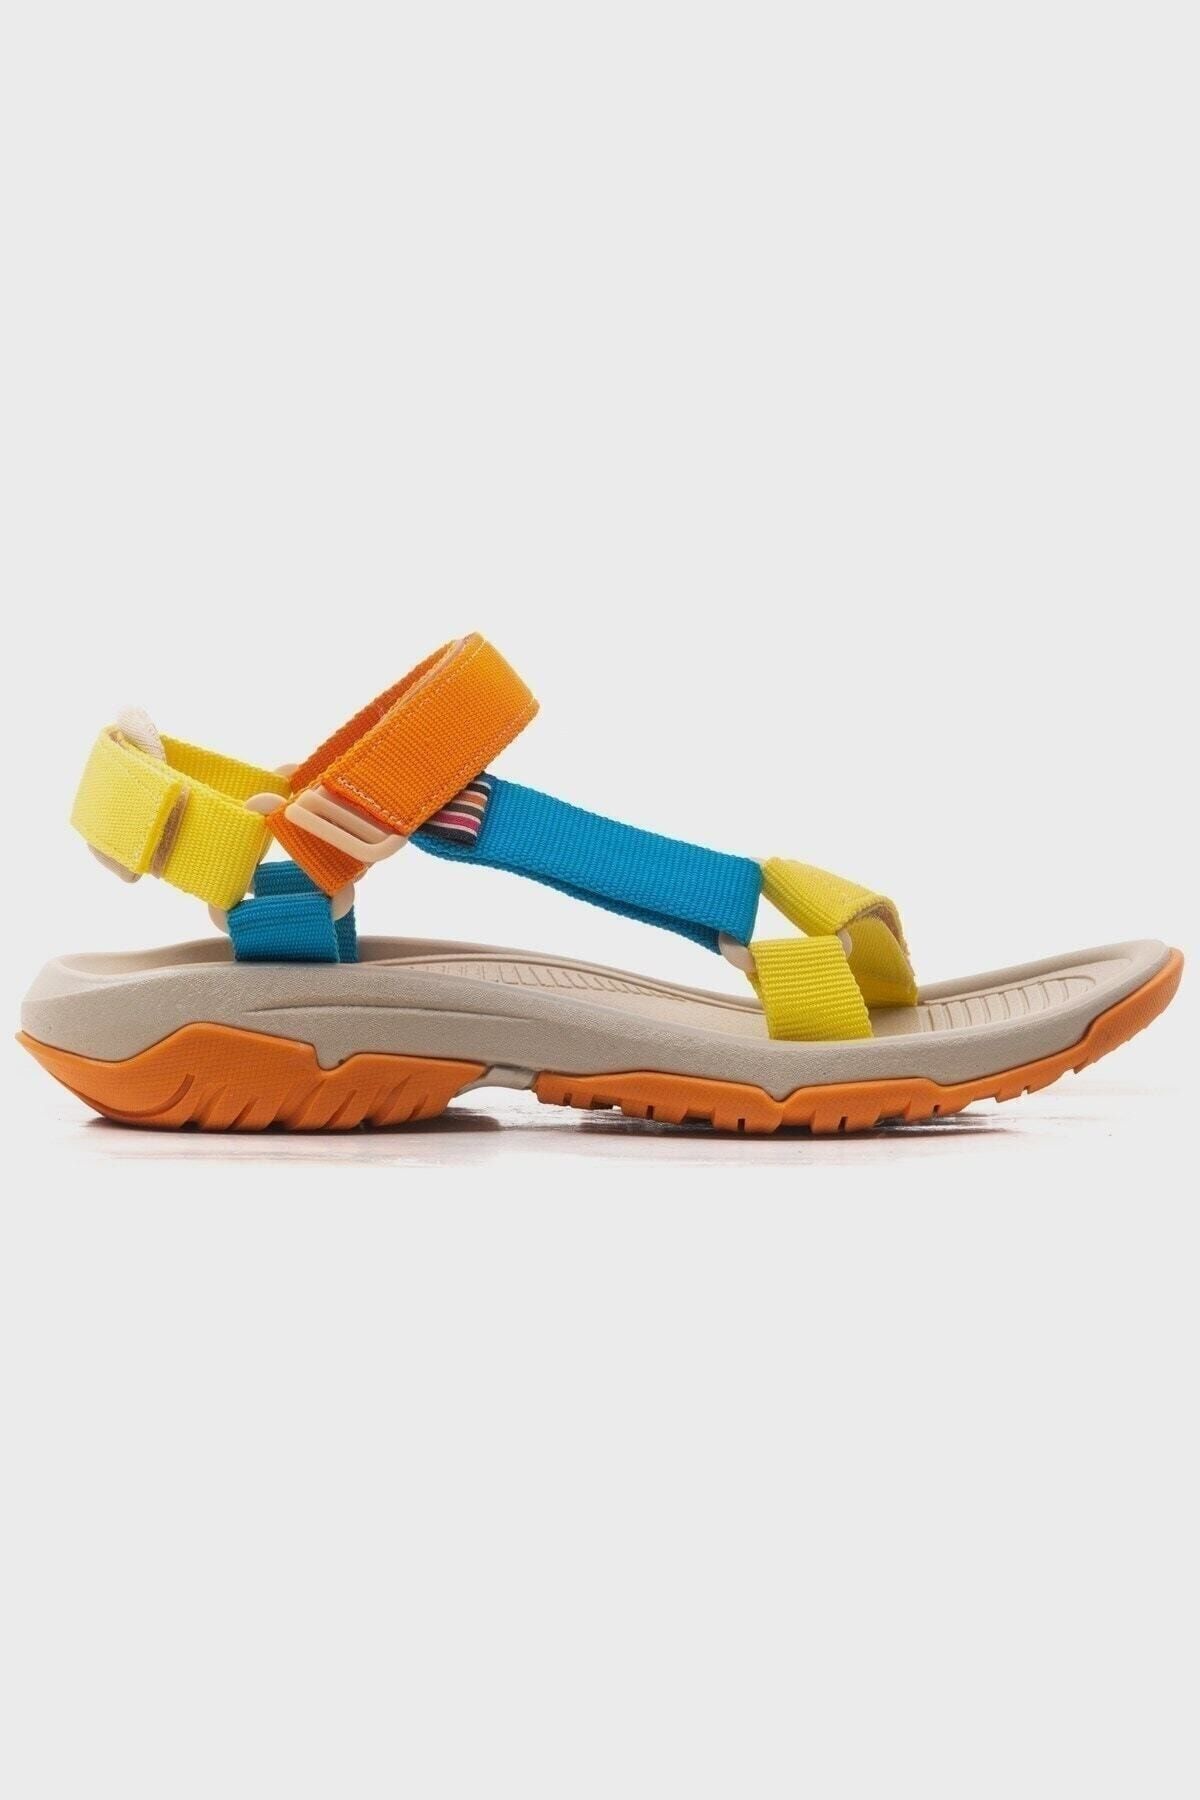 Orianna Design Kadın Sarı Blok Renkli Ortopedik Spor Outdoor Trekking Cırtlı Kaymaz Taban Sandalet